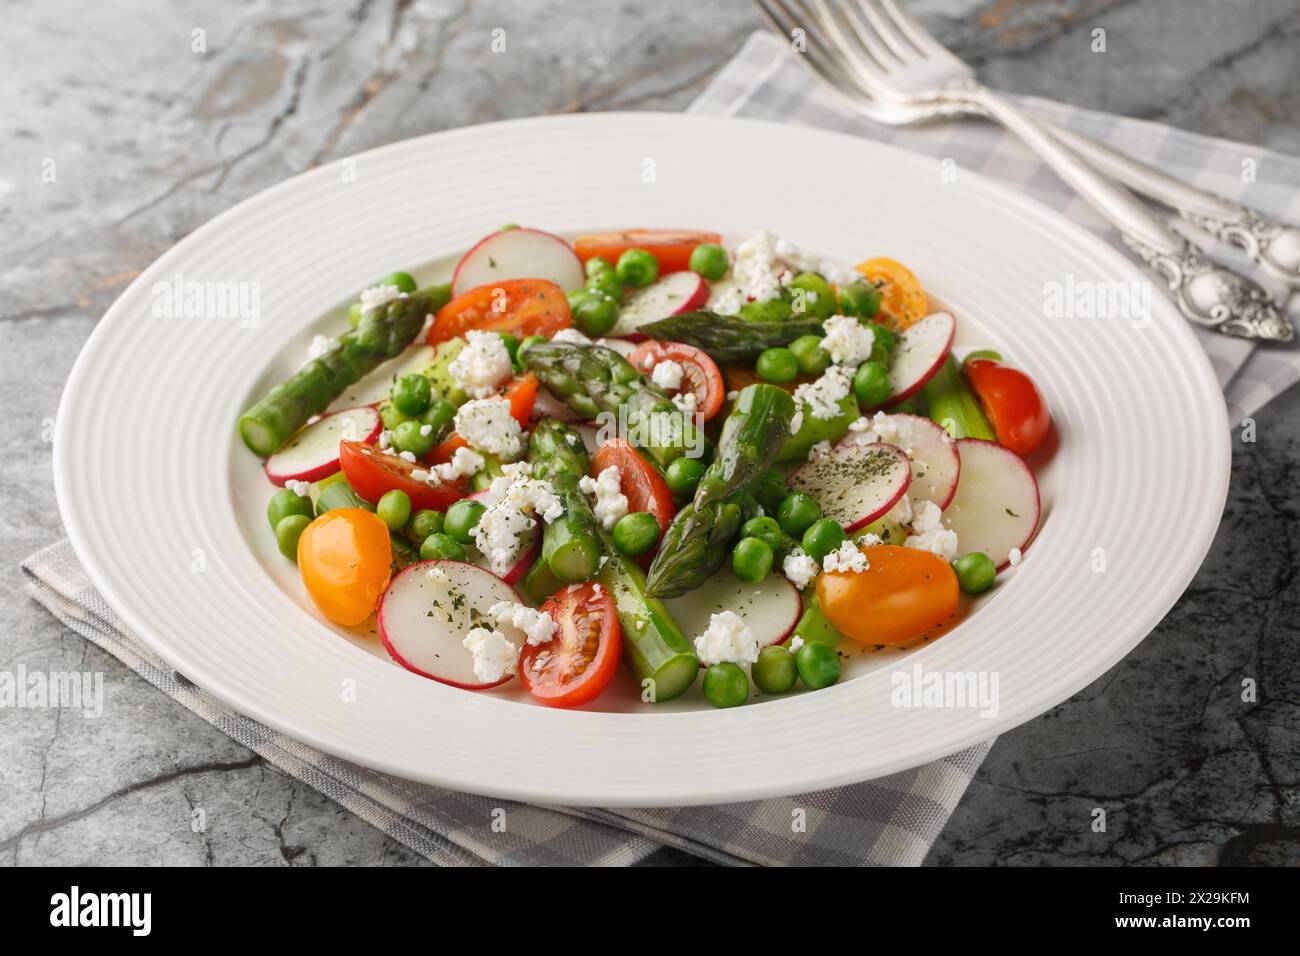 Salade d'asperges, radis, tomates cerises, pois verts et fromage de chèvre habillé de vinaigrette gros plan dans une assiette sur la table. Horizontal Banque D'Images